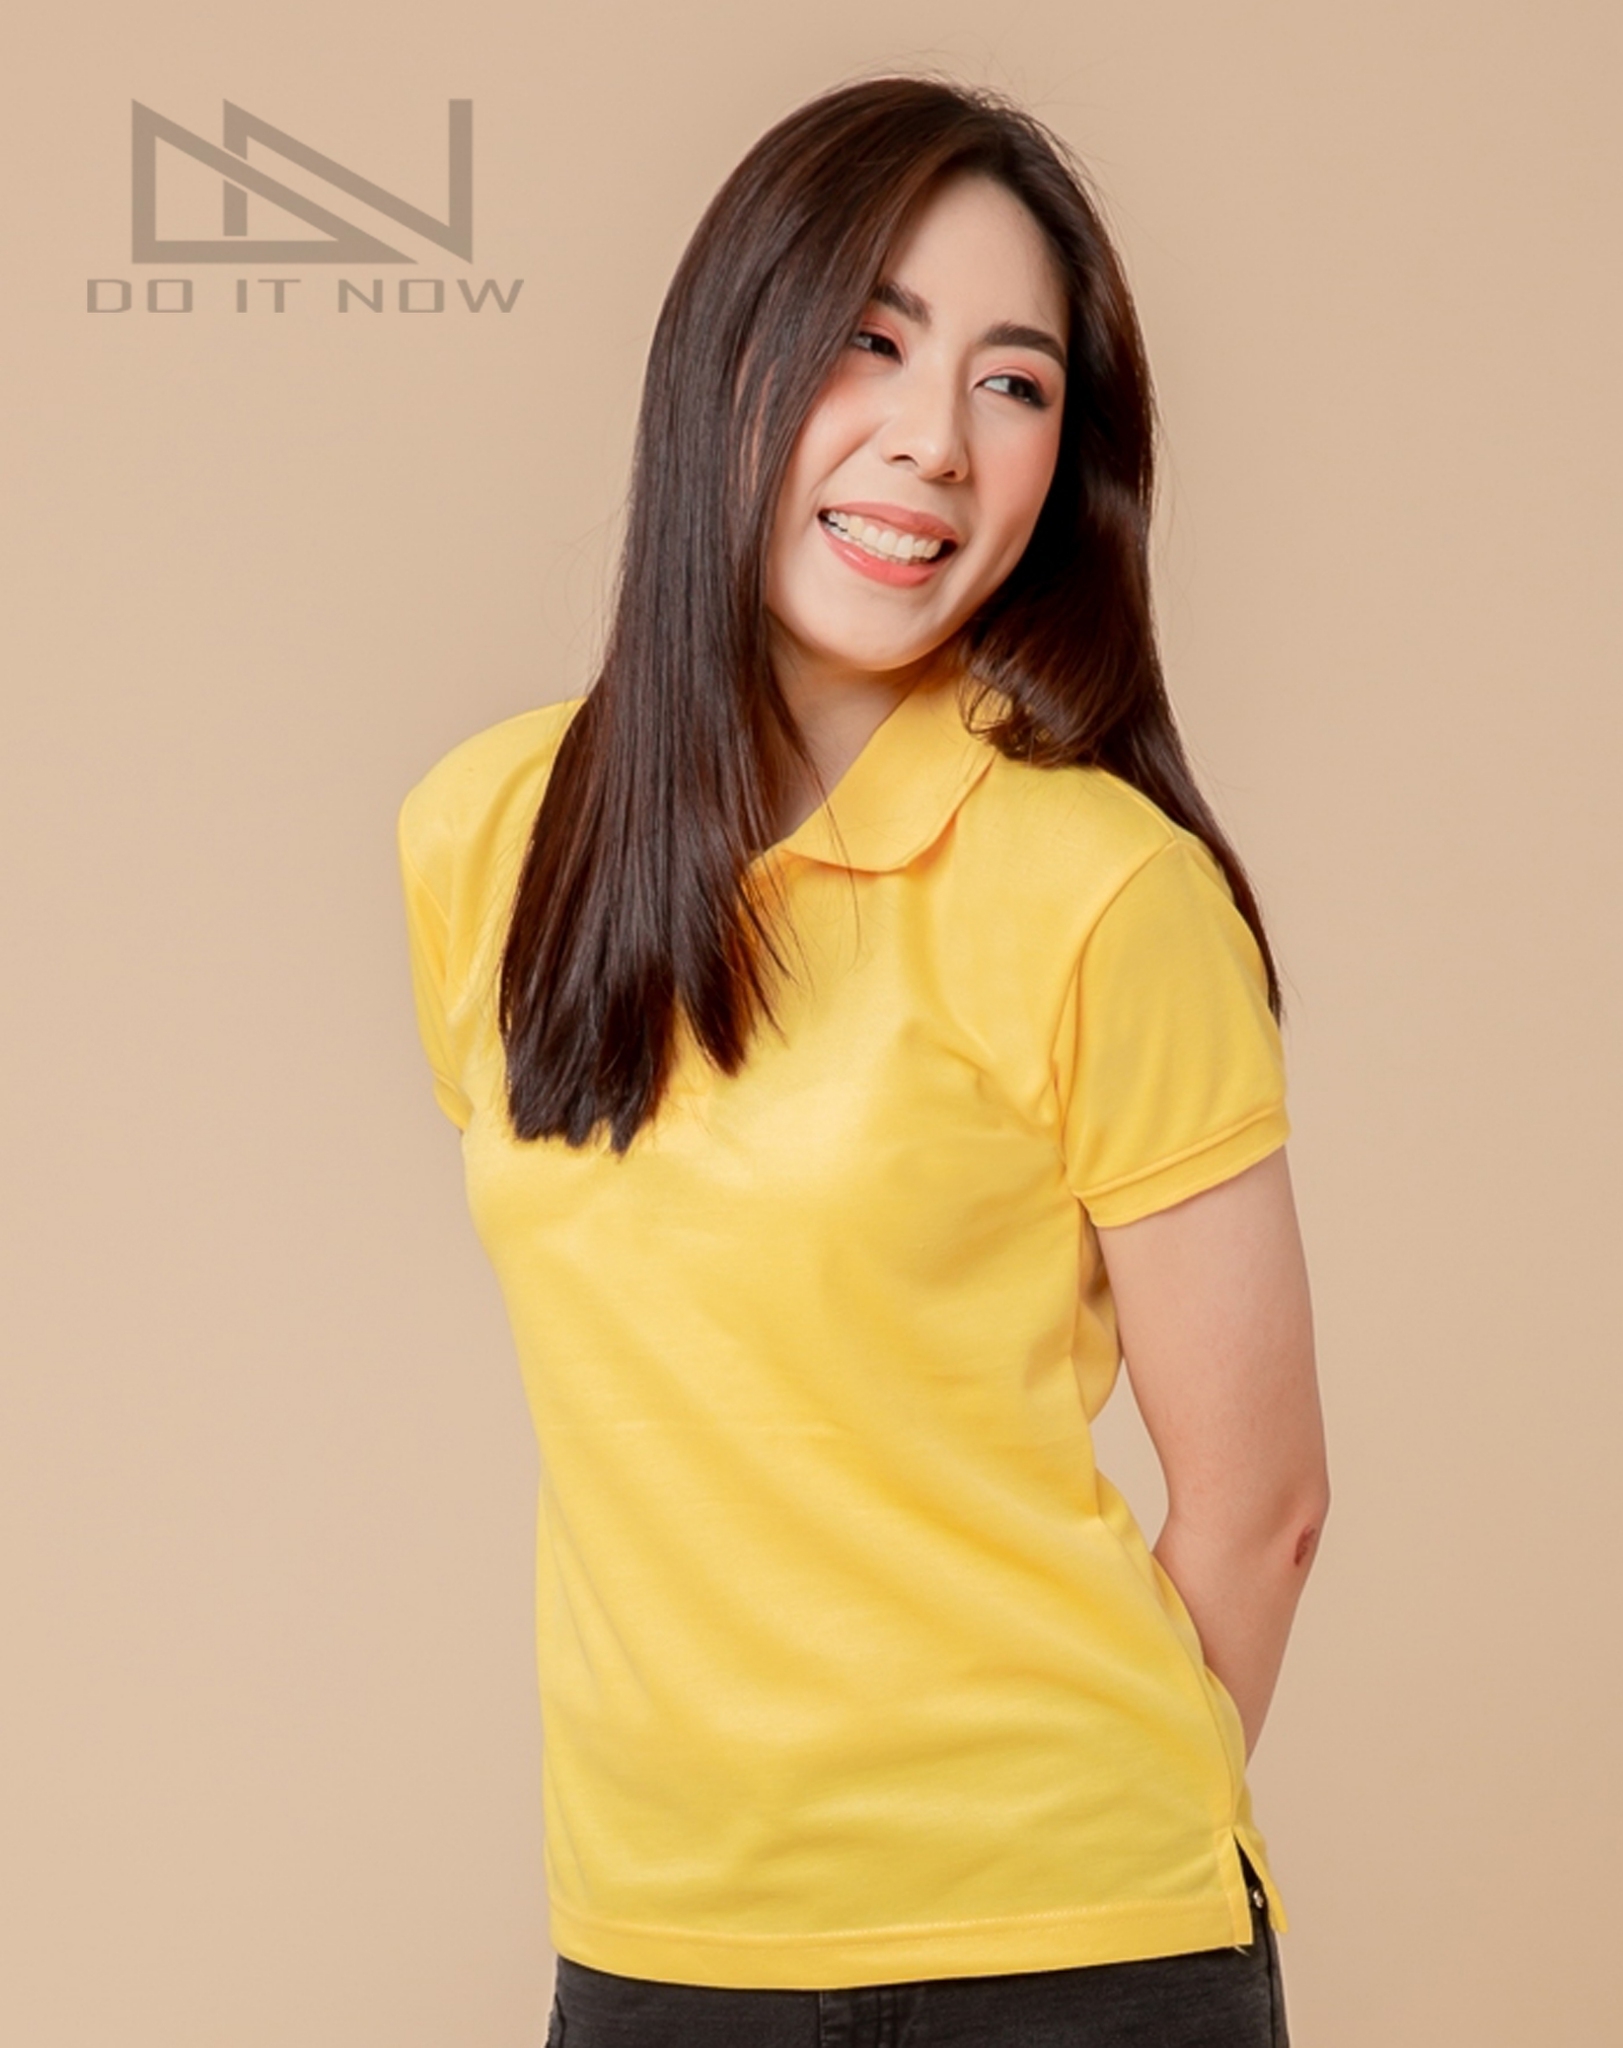 เสื้อโปโลสีเหลือง แขนจั๊ม หญิง By Do it now สินค้าคุณภาพ จากแห่งผลิตโดยตรง!! #มีเก็บปลายทาง #